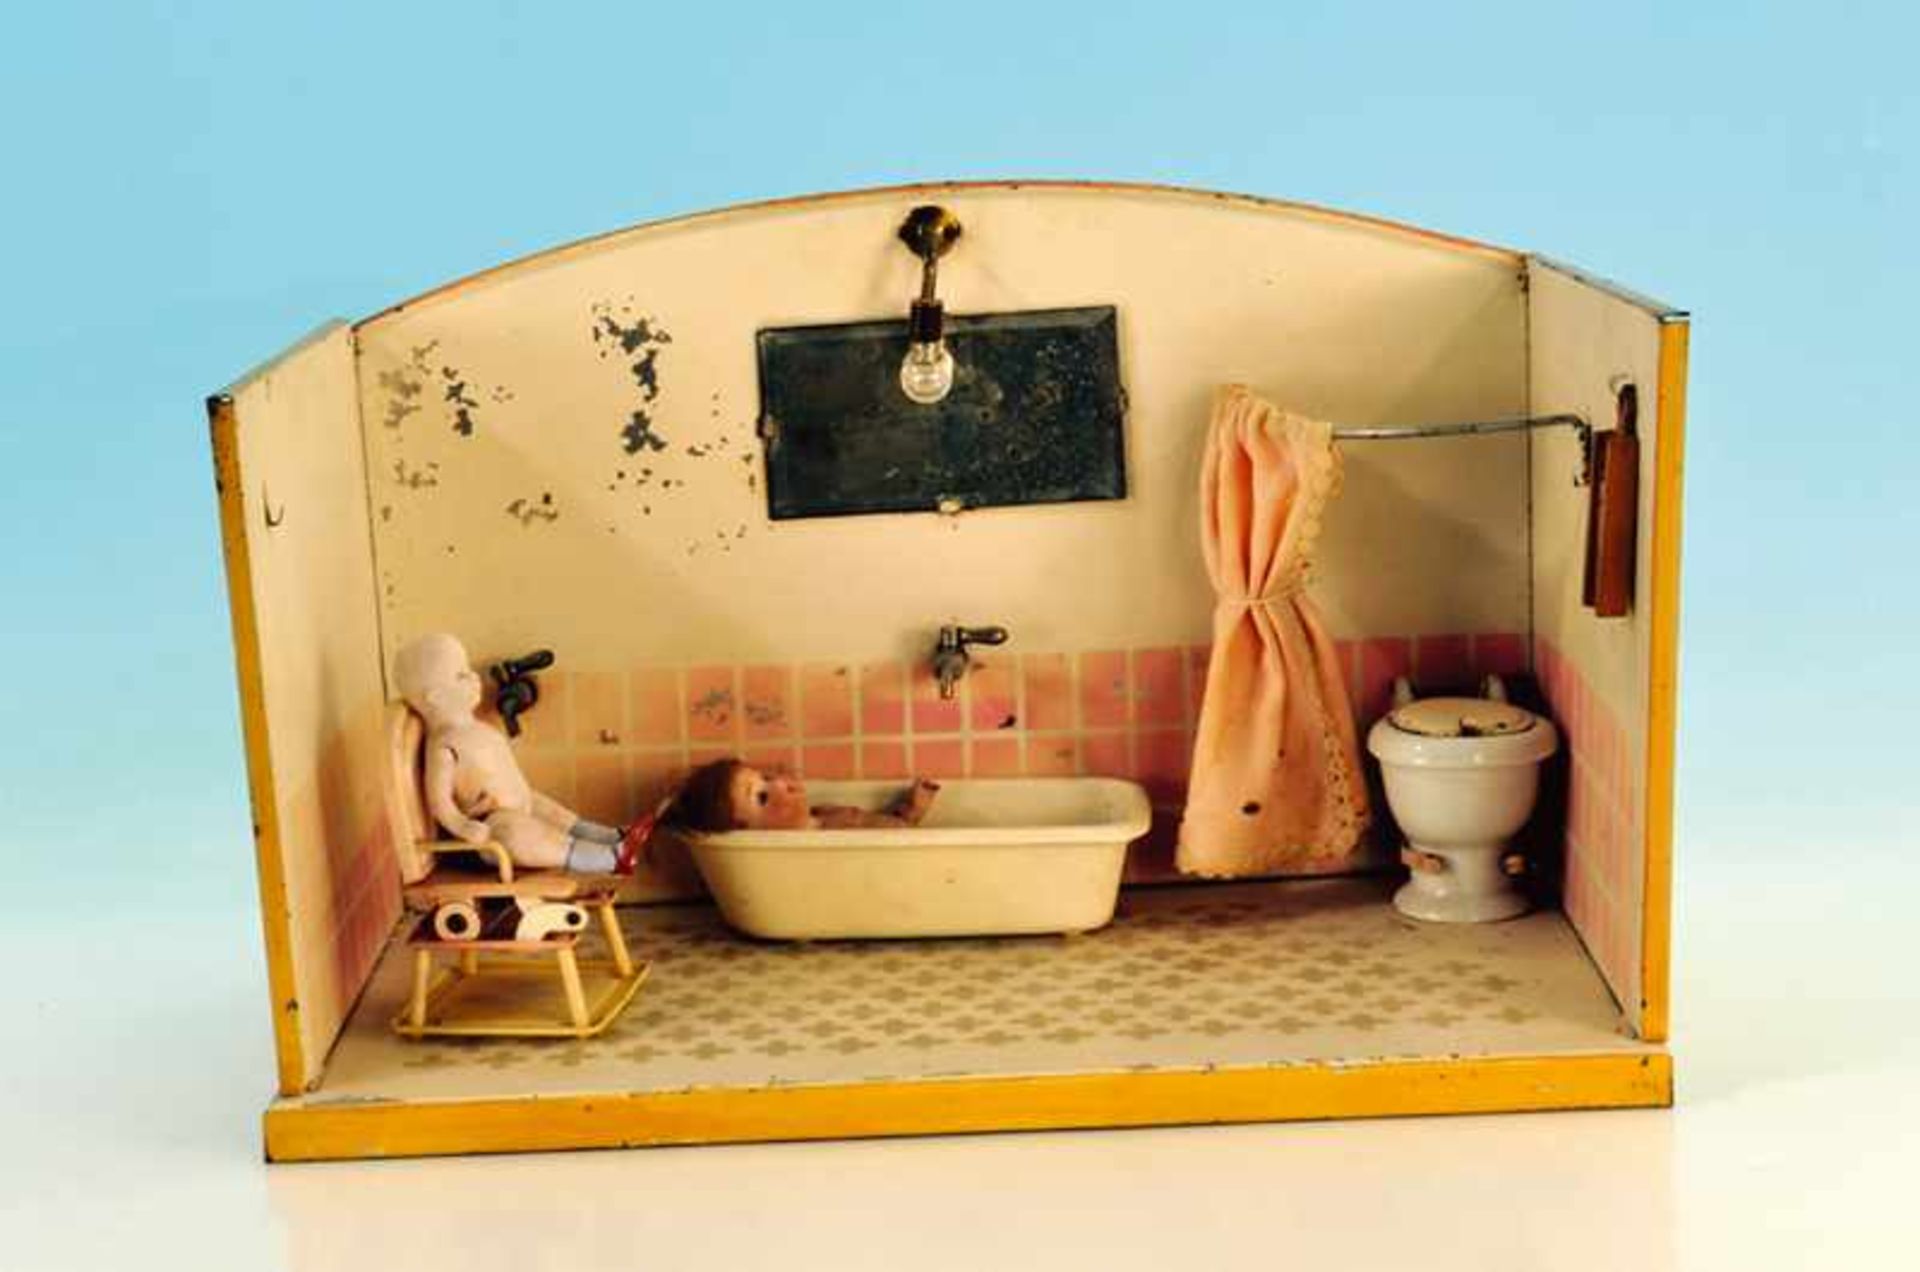 KIBRI "Badezimmer" 37 x 19 cm, mit 2 Porzellanpuppen und Kinderbedürfnisstuhl, Lampenschirm